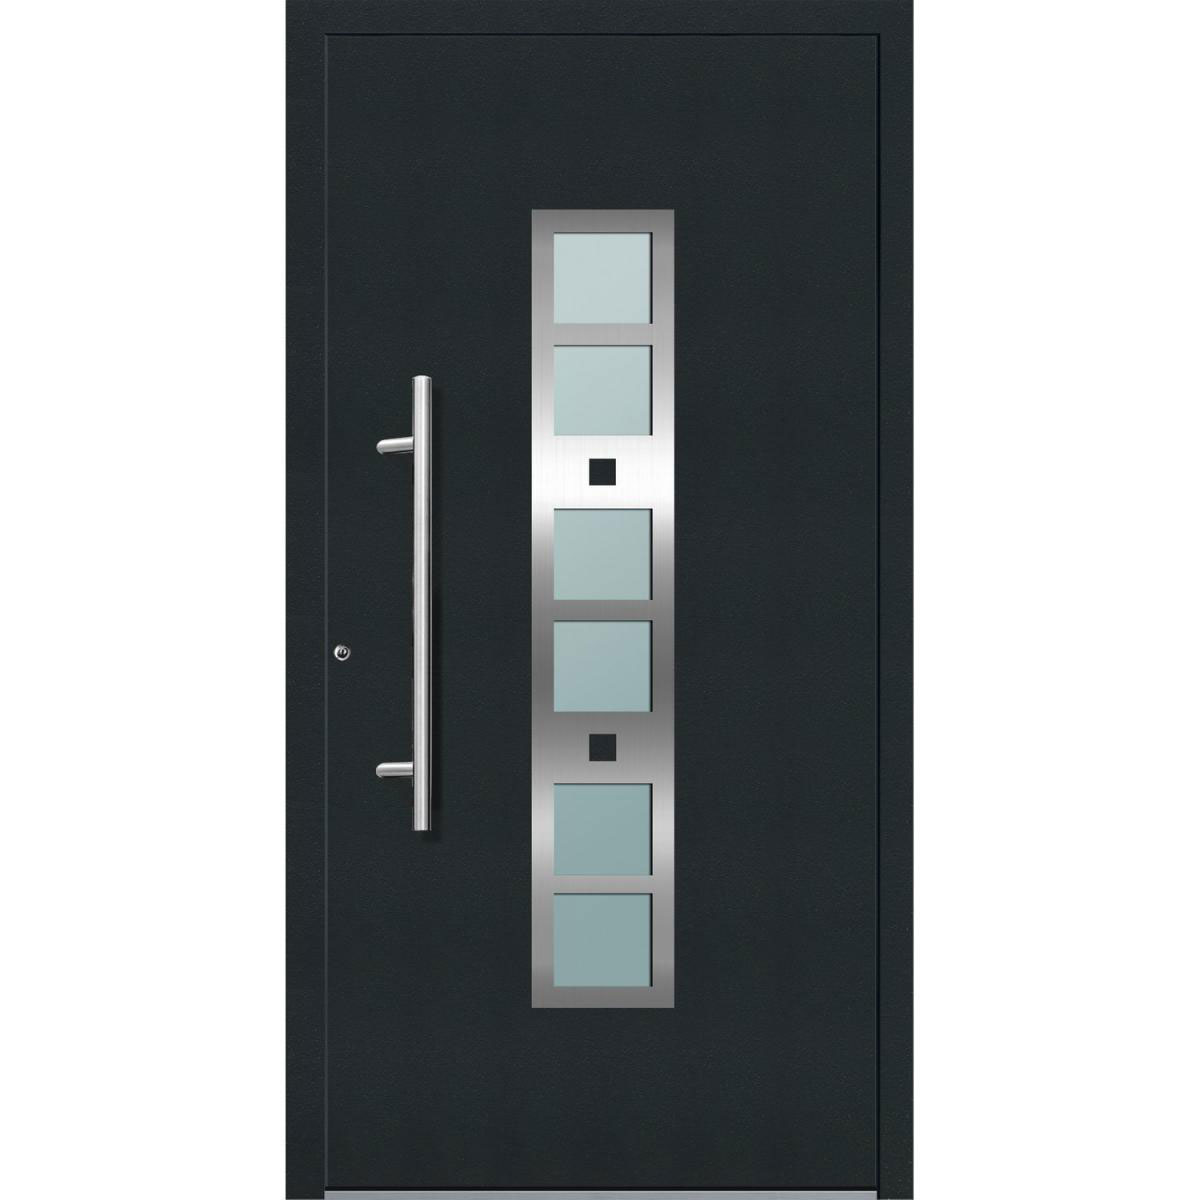 Aluminium Sicherheits-Haustür „Pisa Exklusiv“, 75mm, anthrazit, 110x210 cm, Anschlag links, inkl. Griffset